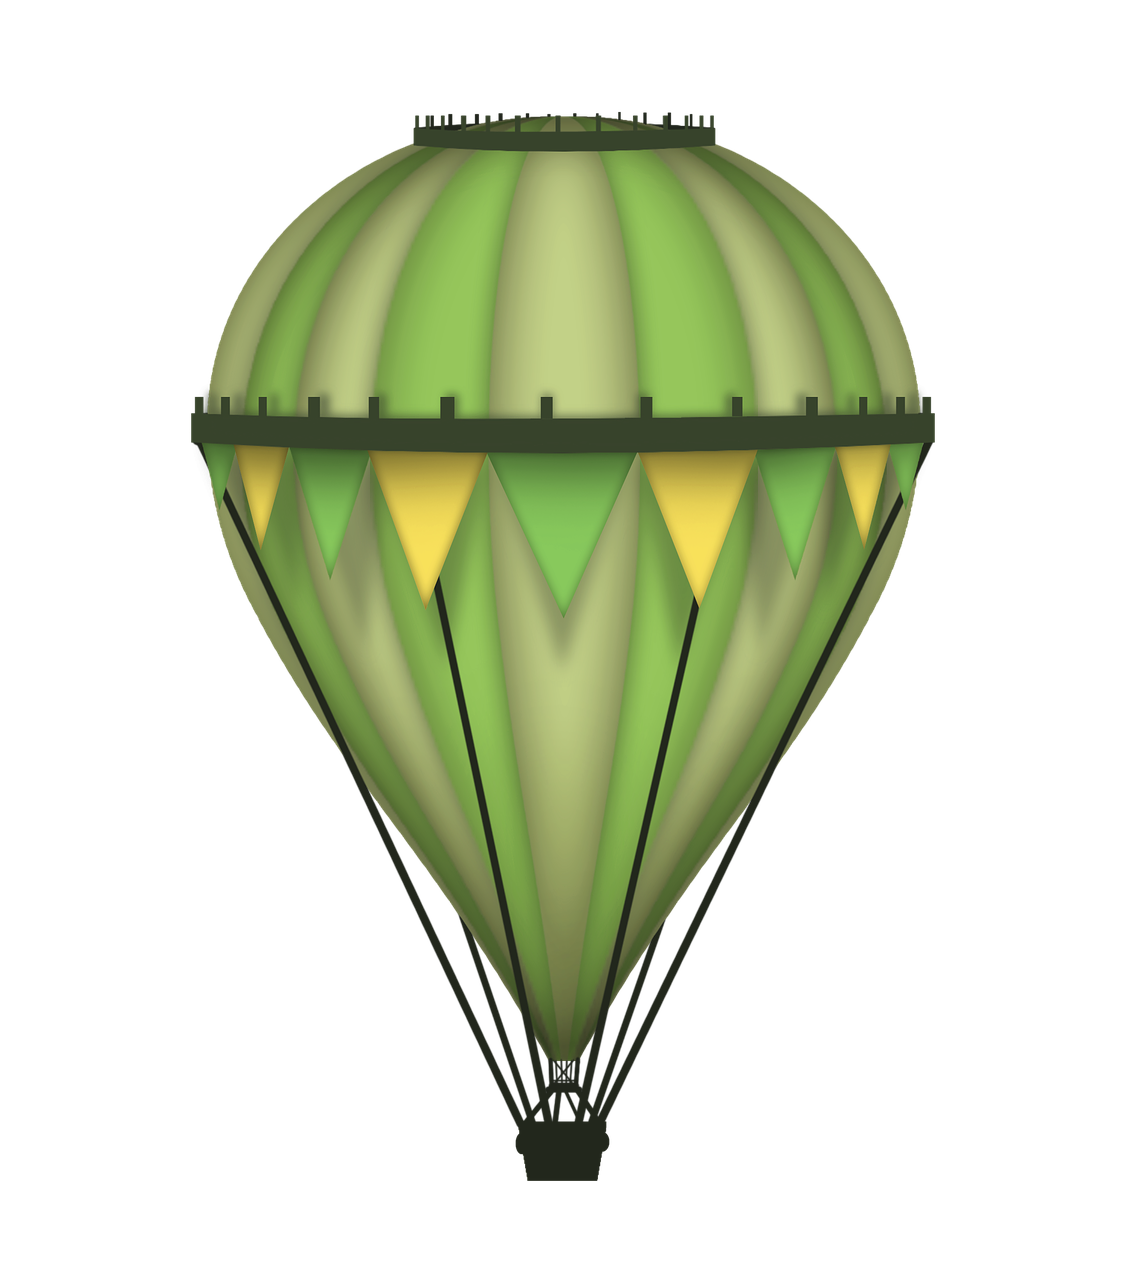 balloon green illustration free photo